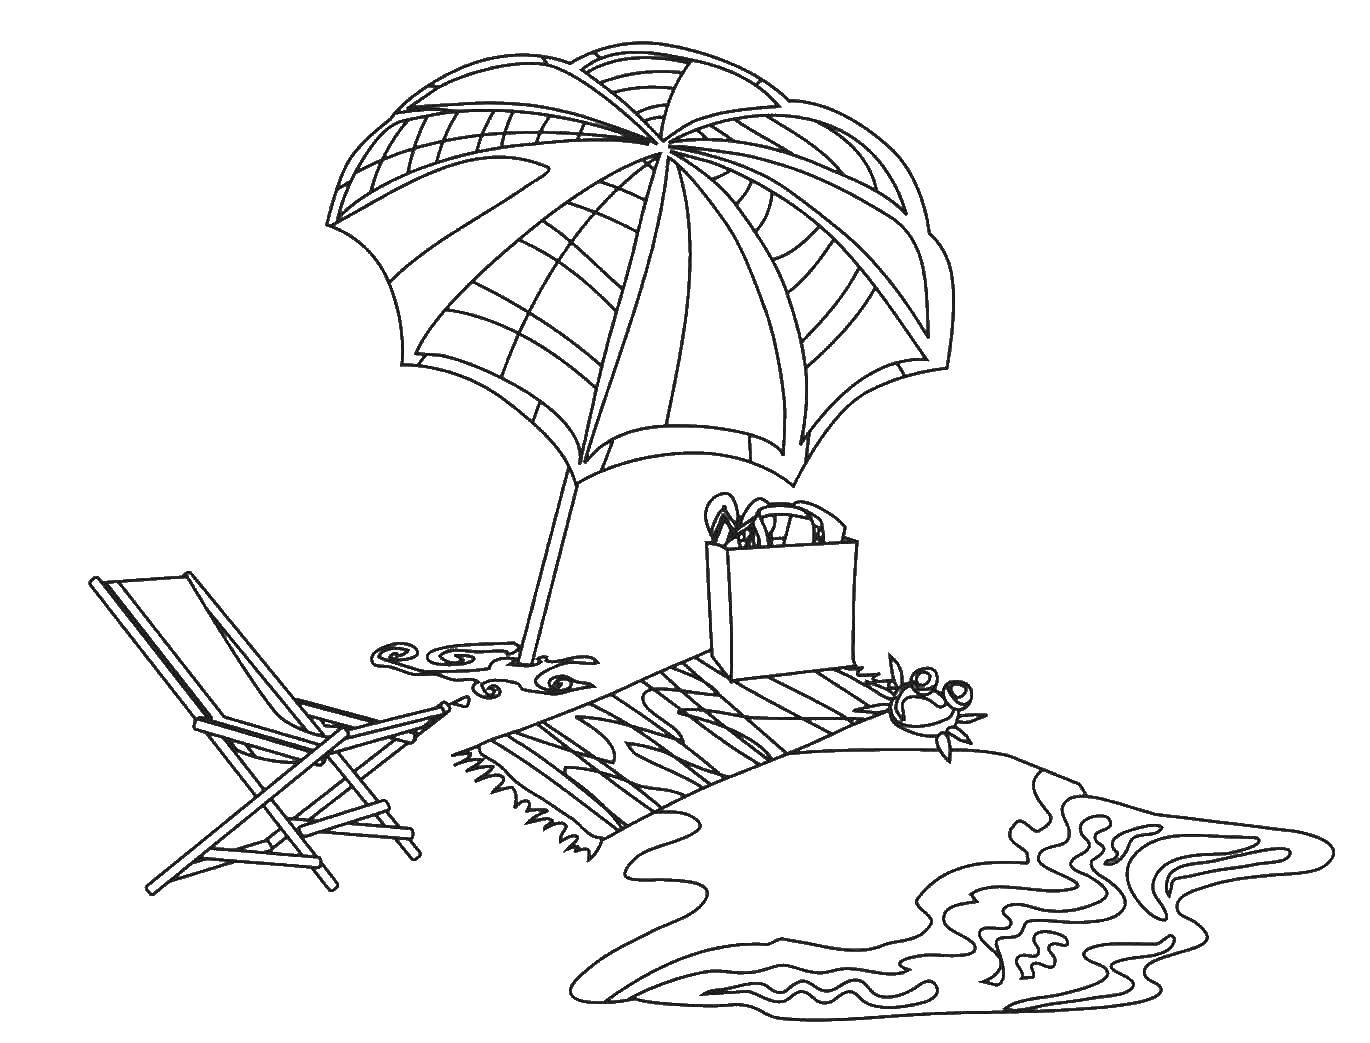 Coloring Beach. Category Summer beach. Tags:  beach, deck chair, umbrella, towel.